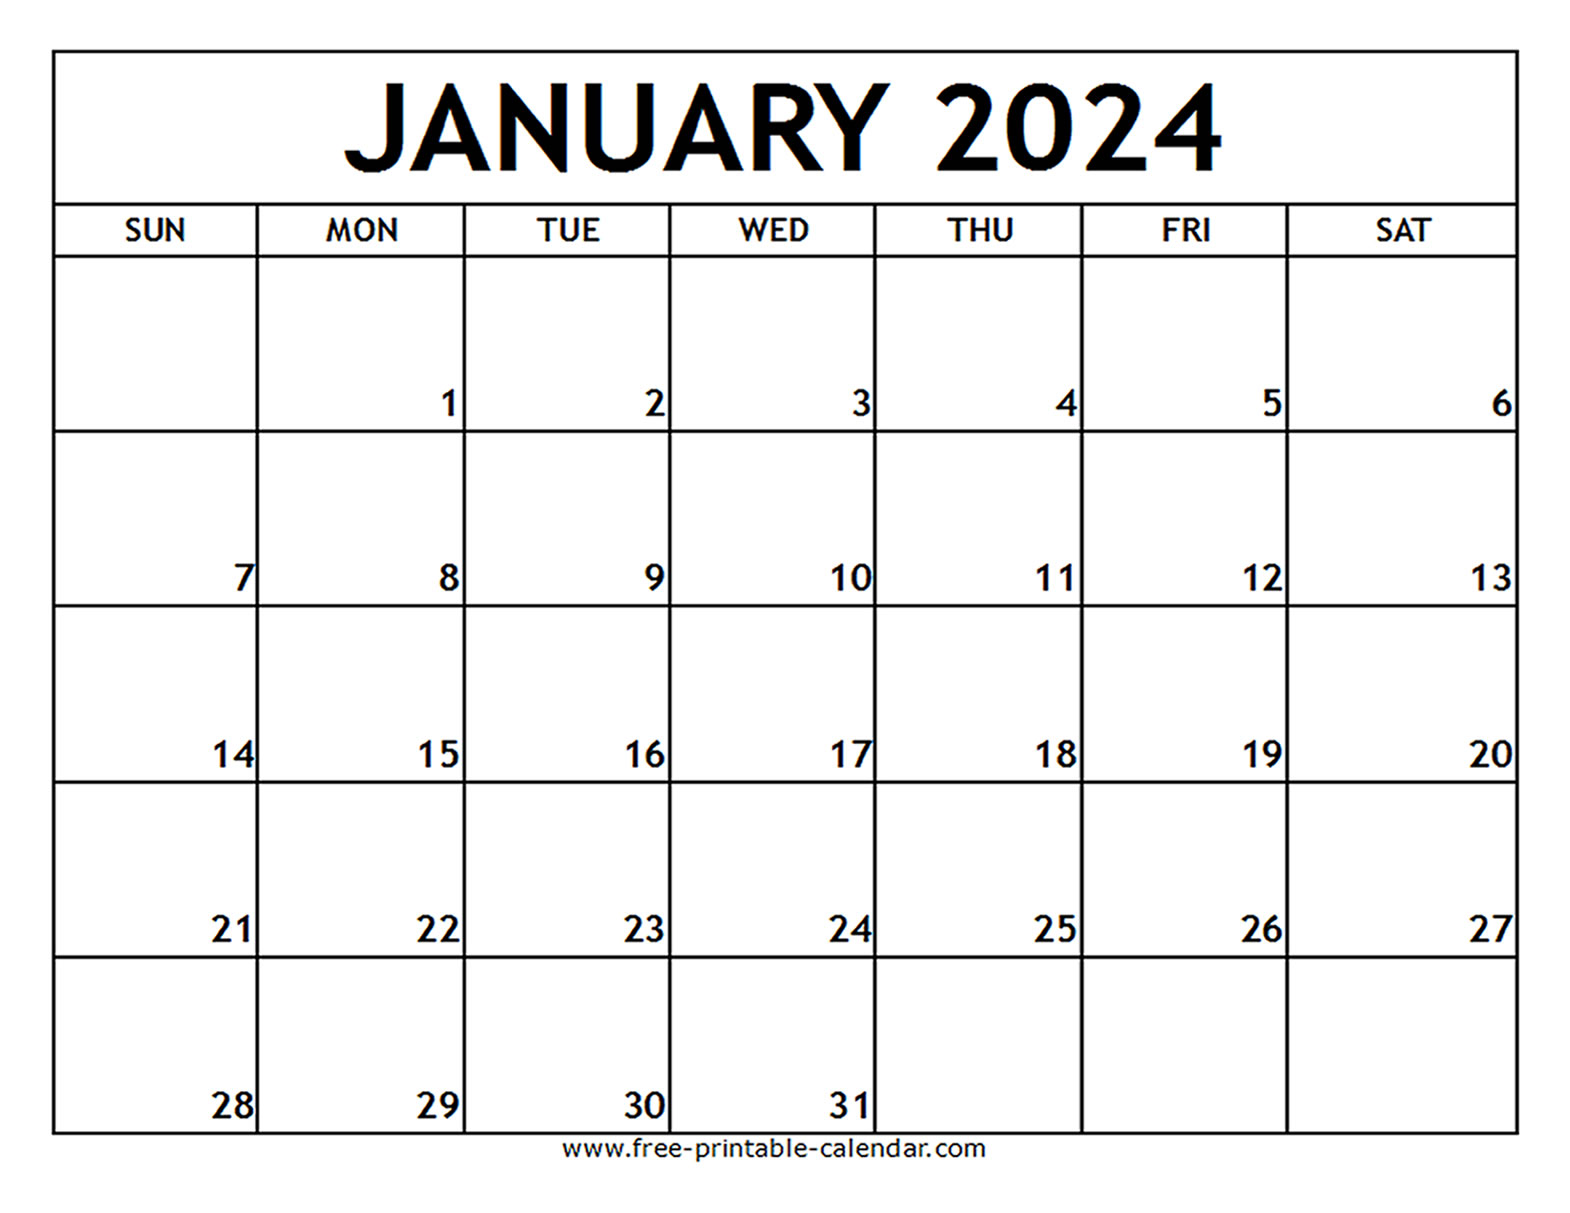 January 2024 Printable Calendar - Free-printable-calendar.com